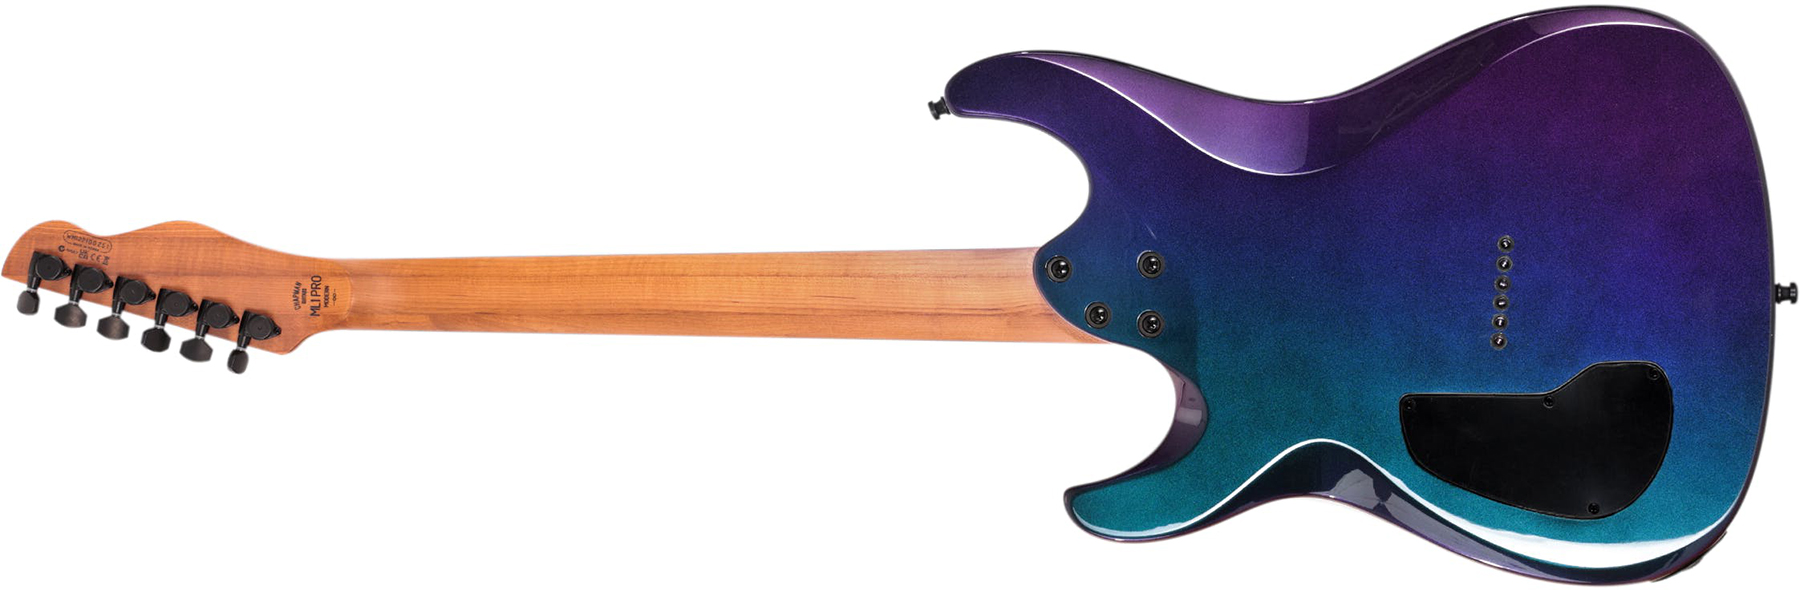 Chapman Guitars Ml1 Modern Pro 2h Seymour Duncan  Ht Eb - Morpheus Purple Flip - Guitarra eléctrica con forma de str. - Variation 1